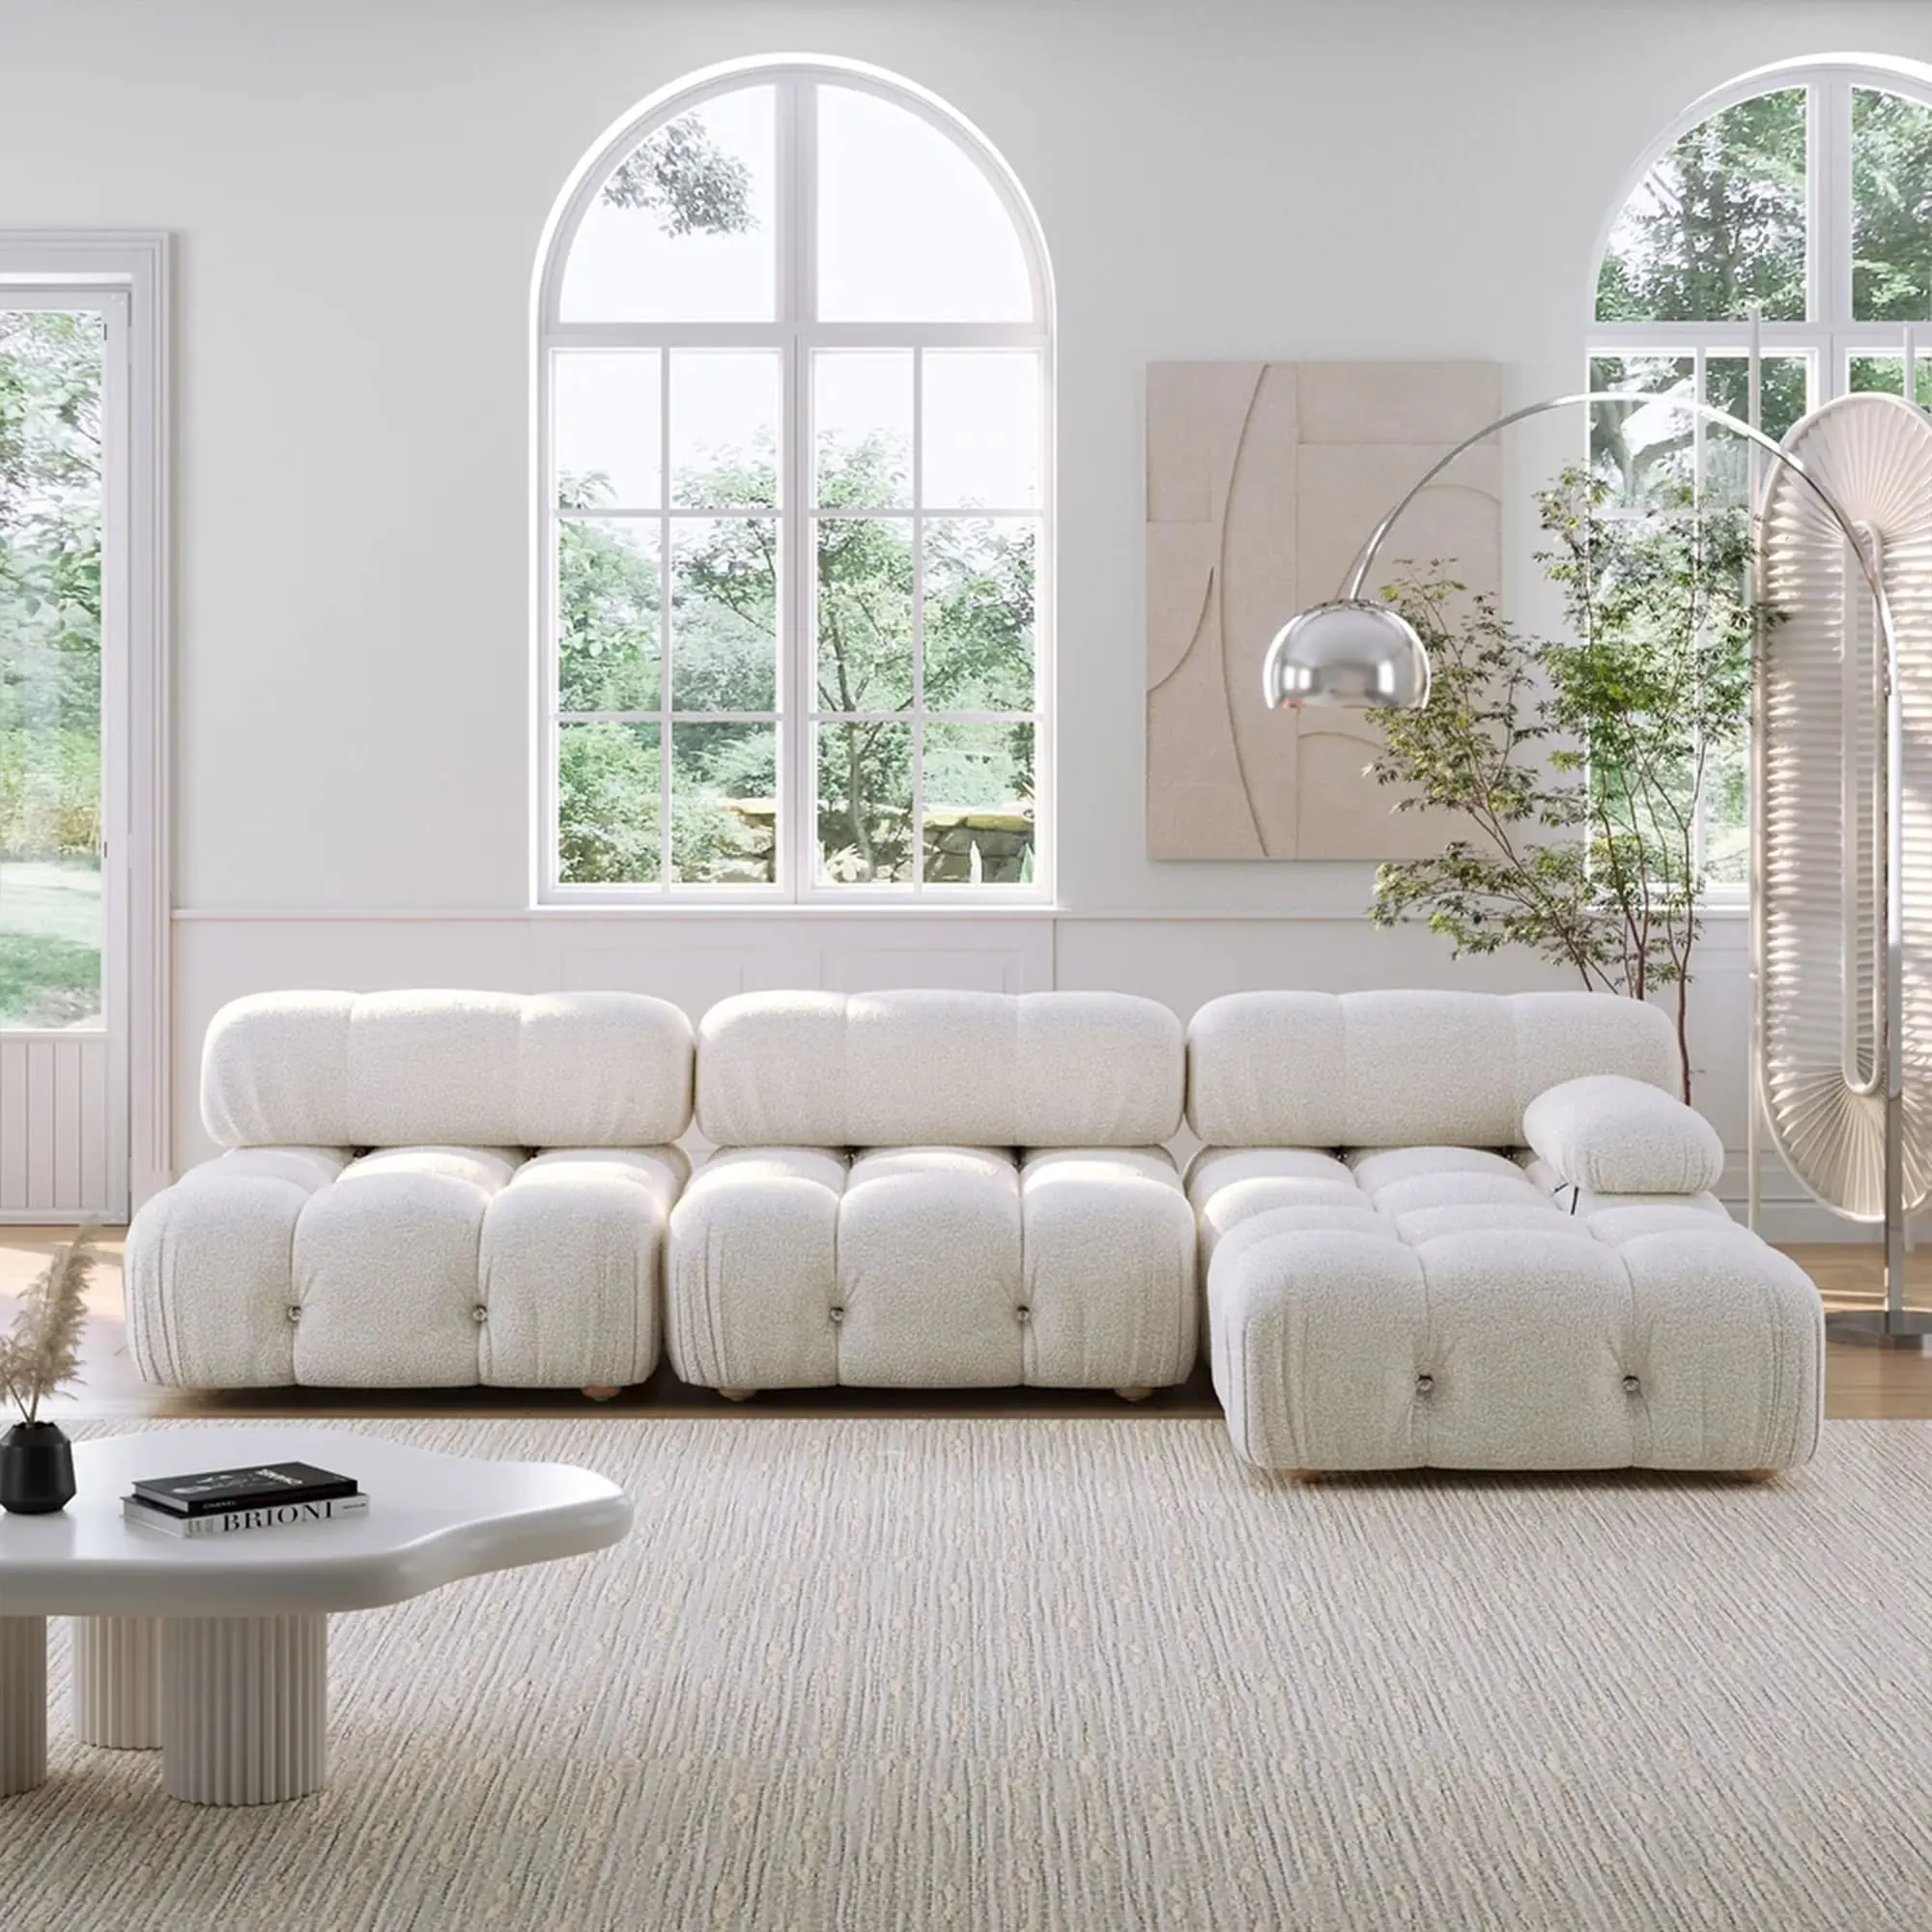 Modern Mario Bellini L şekli modüler kesit Recliner yumuşak ahşap kanepe ev oturma odası için